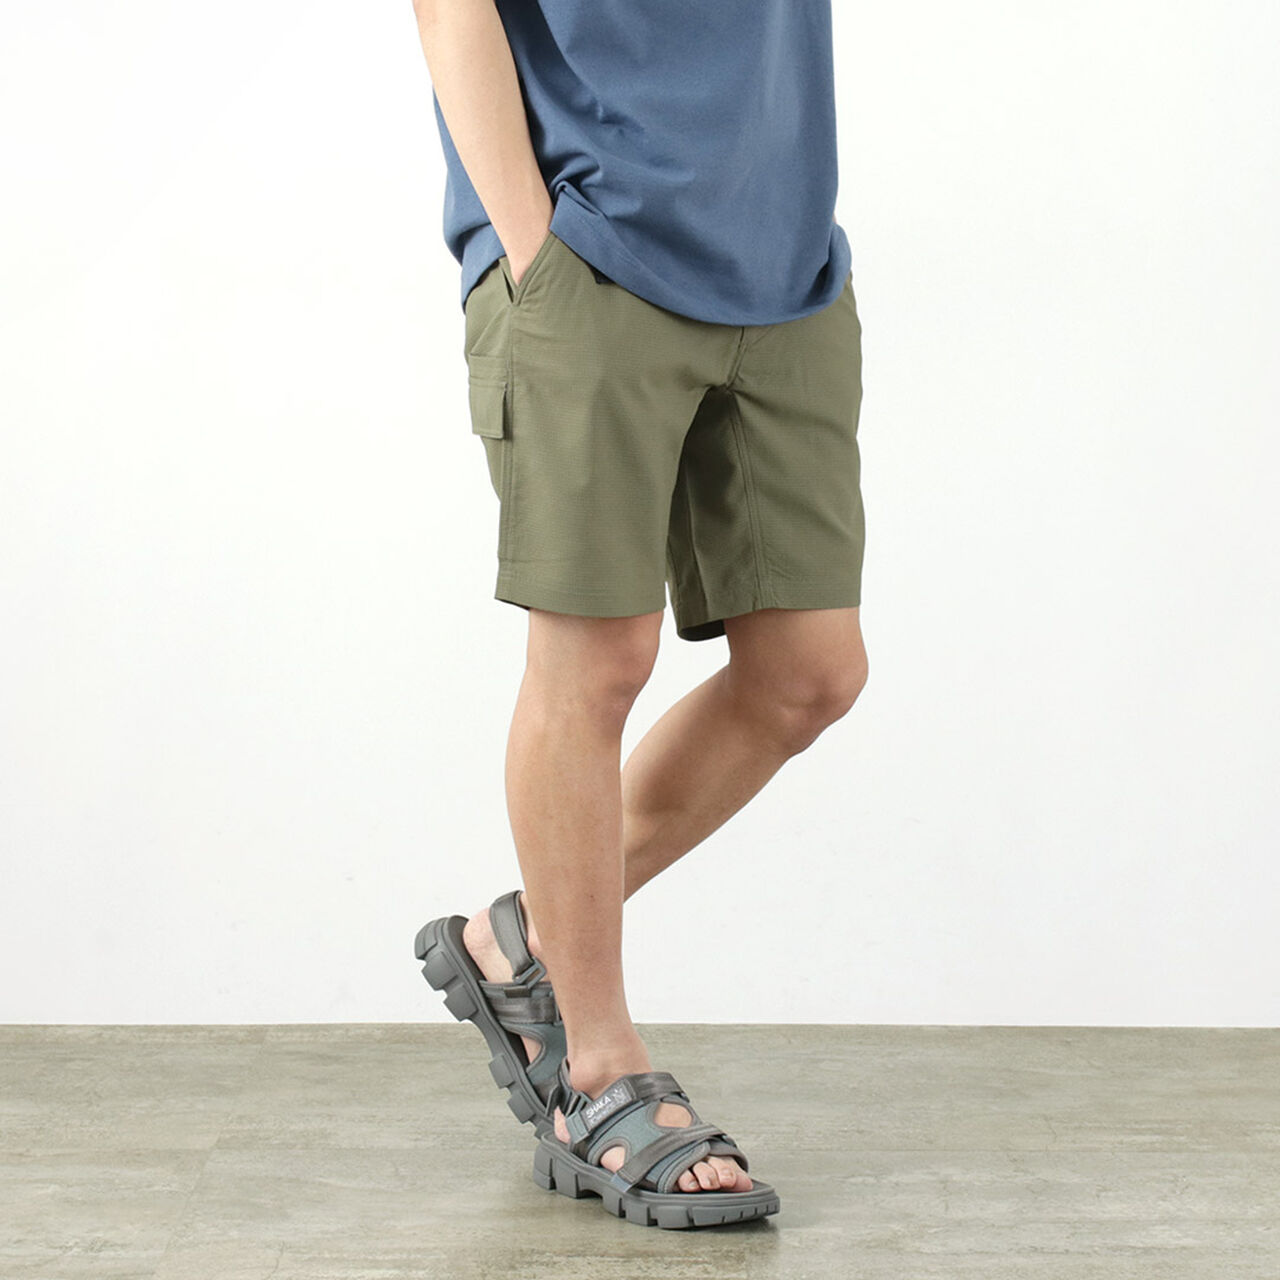 Trek cool mesh shorts,Ash, large image number 0